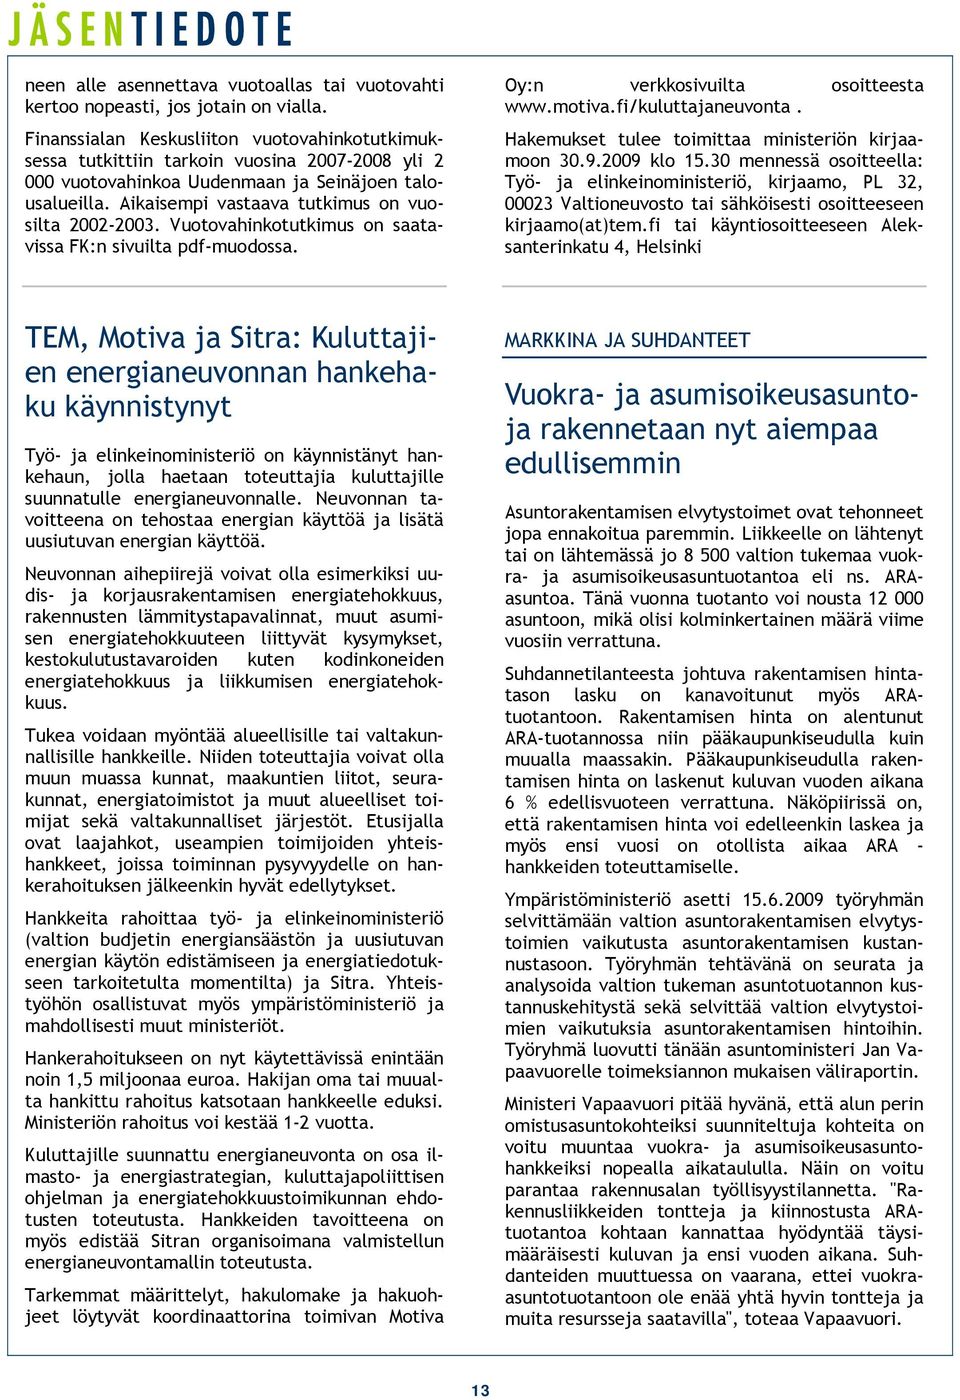 Aikaisempi vastaava tutkimus on vuosilta 2002-2003. Vuotovahinkotutkimus on saatavissa FK:n sivuilta pdf-muodossa. Oy:n verkkosivuilta osoitteesta www.motiva.fi/kuluttajaneuvonta.